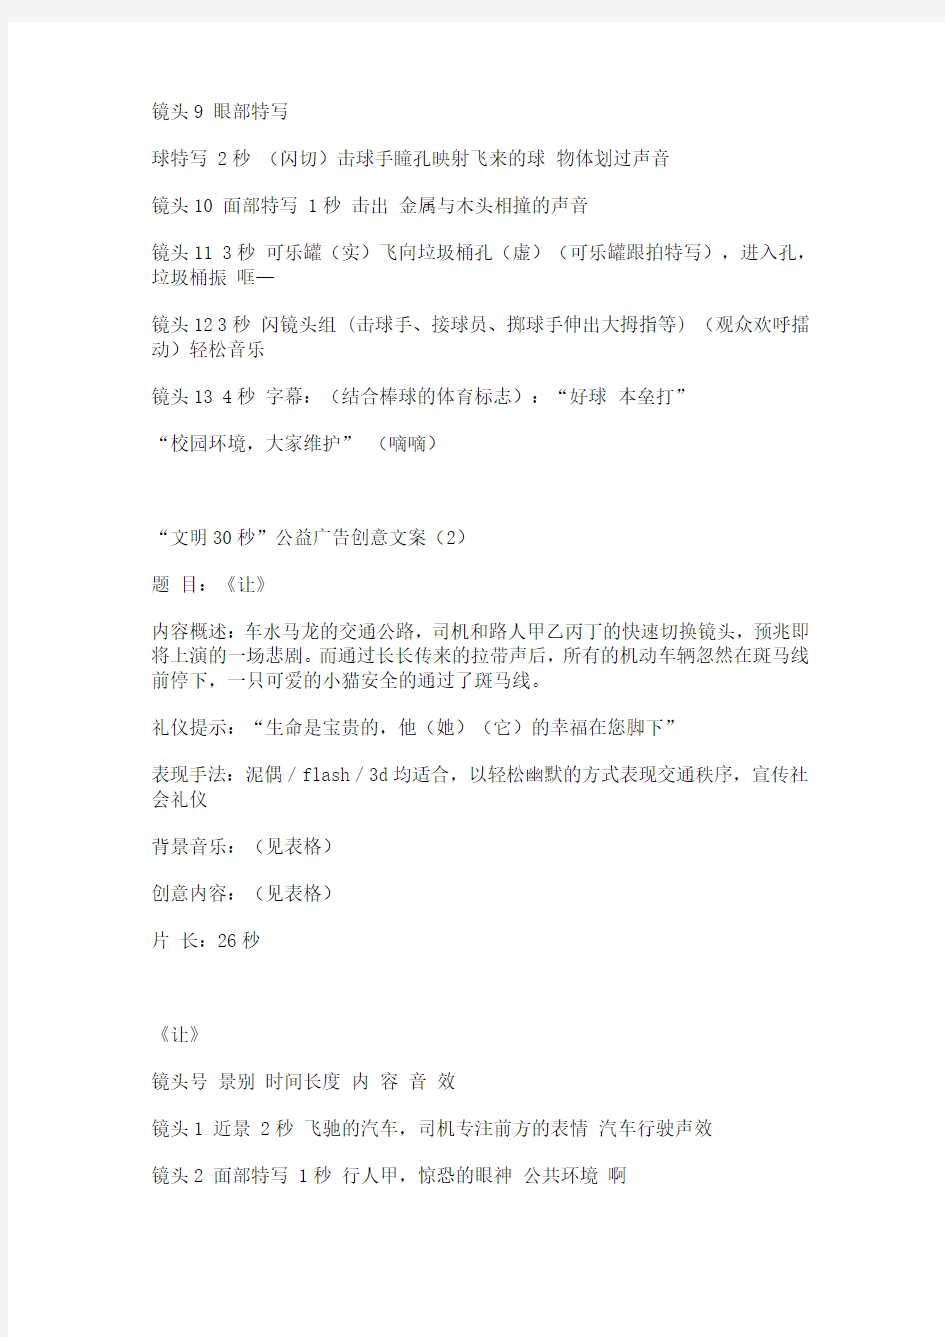 北京电视台“文明30秒”公益广告创意文案